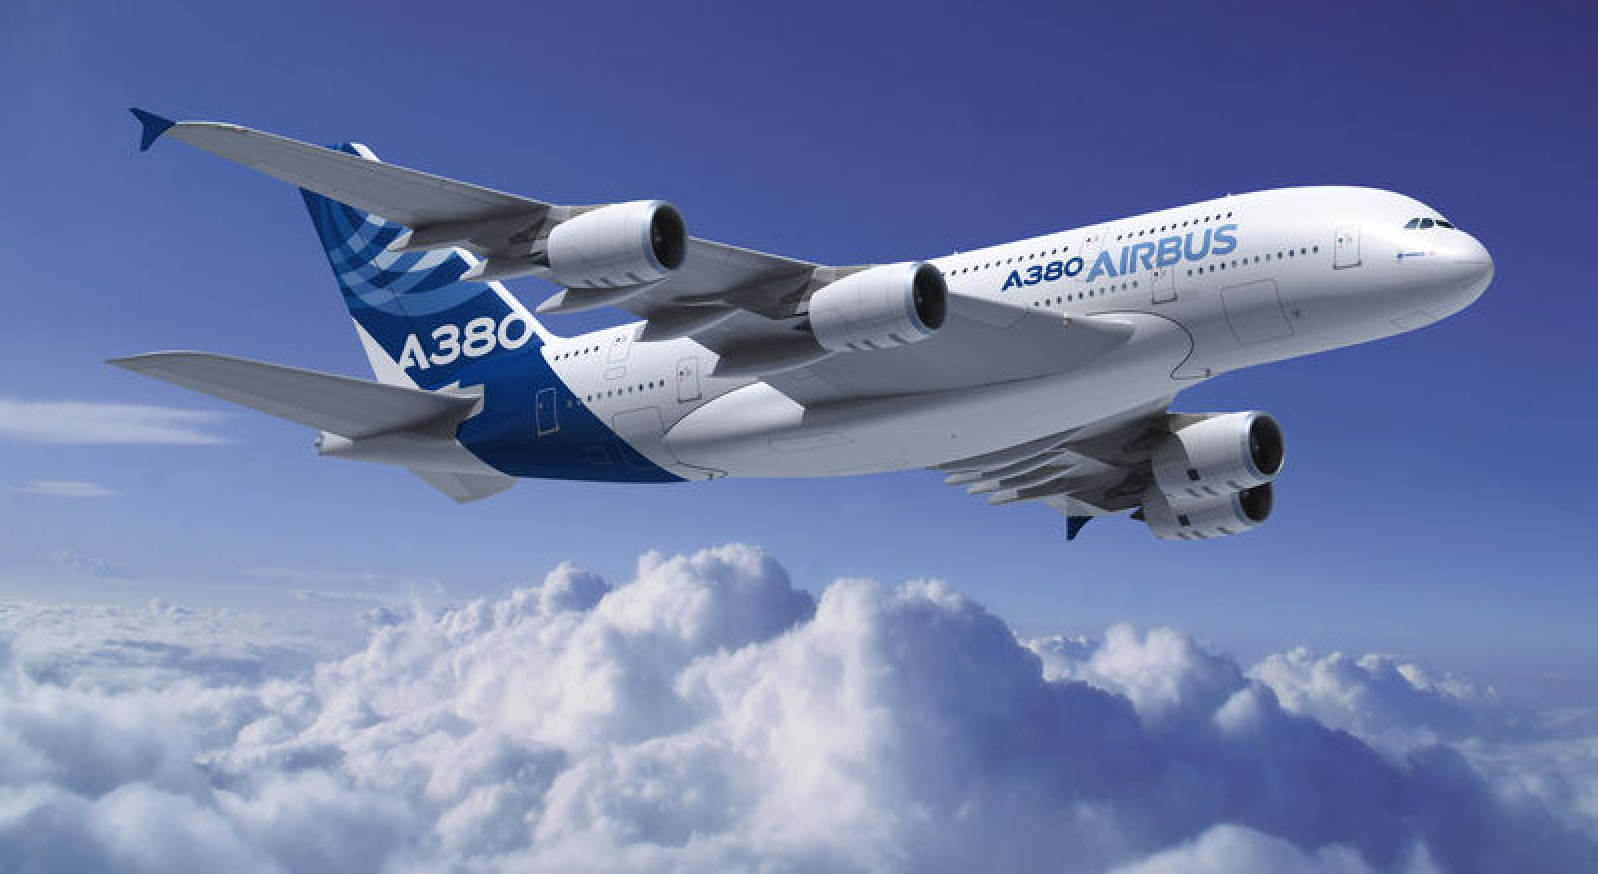 Airbus A380 Landing Cockpit Wallpaper Picswallpaper